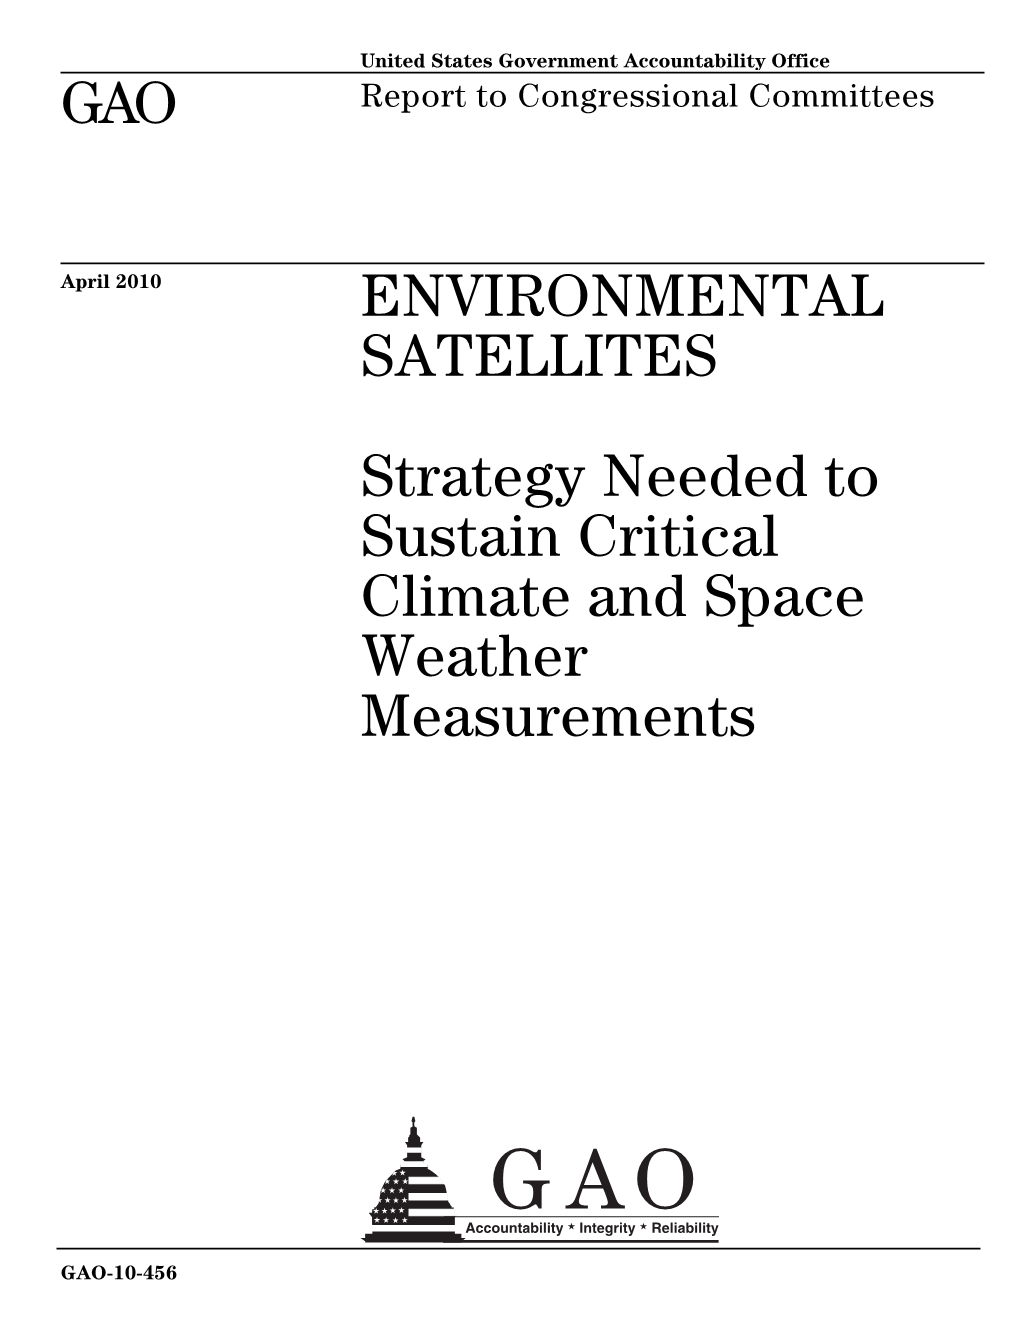 GAO-10-456 Environmental Satellites: Strategy Needed To